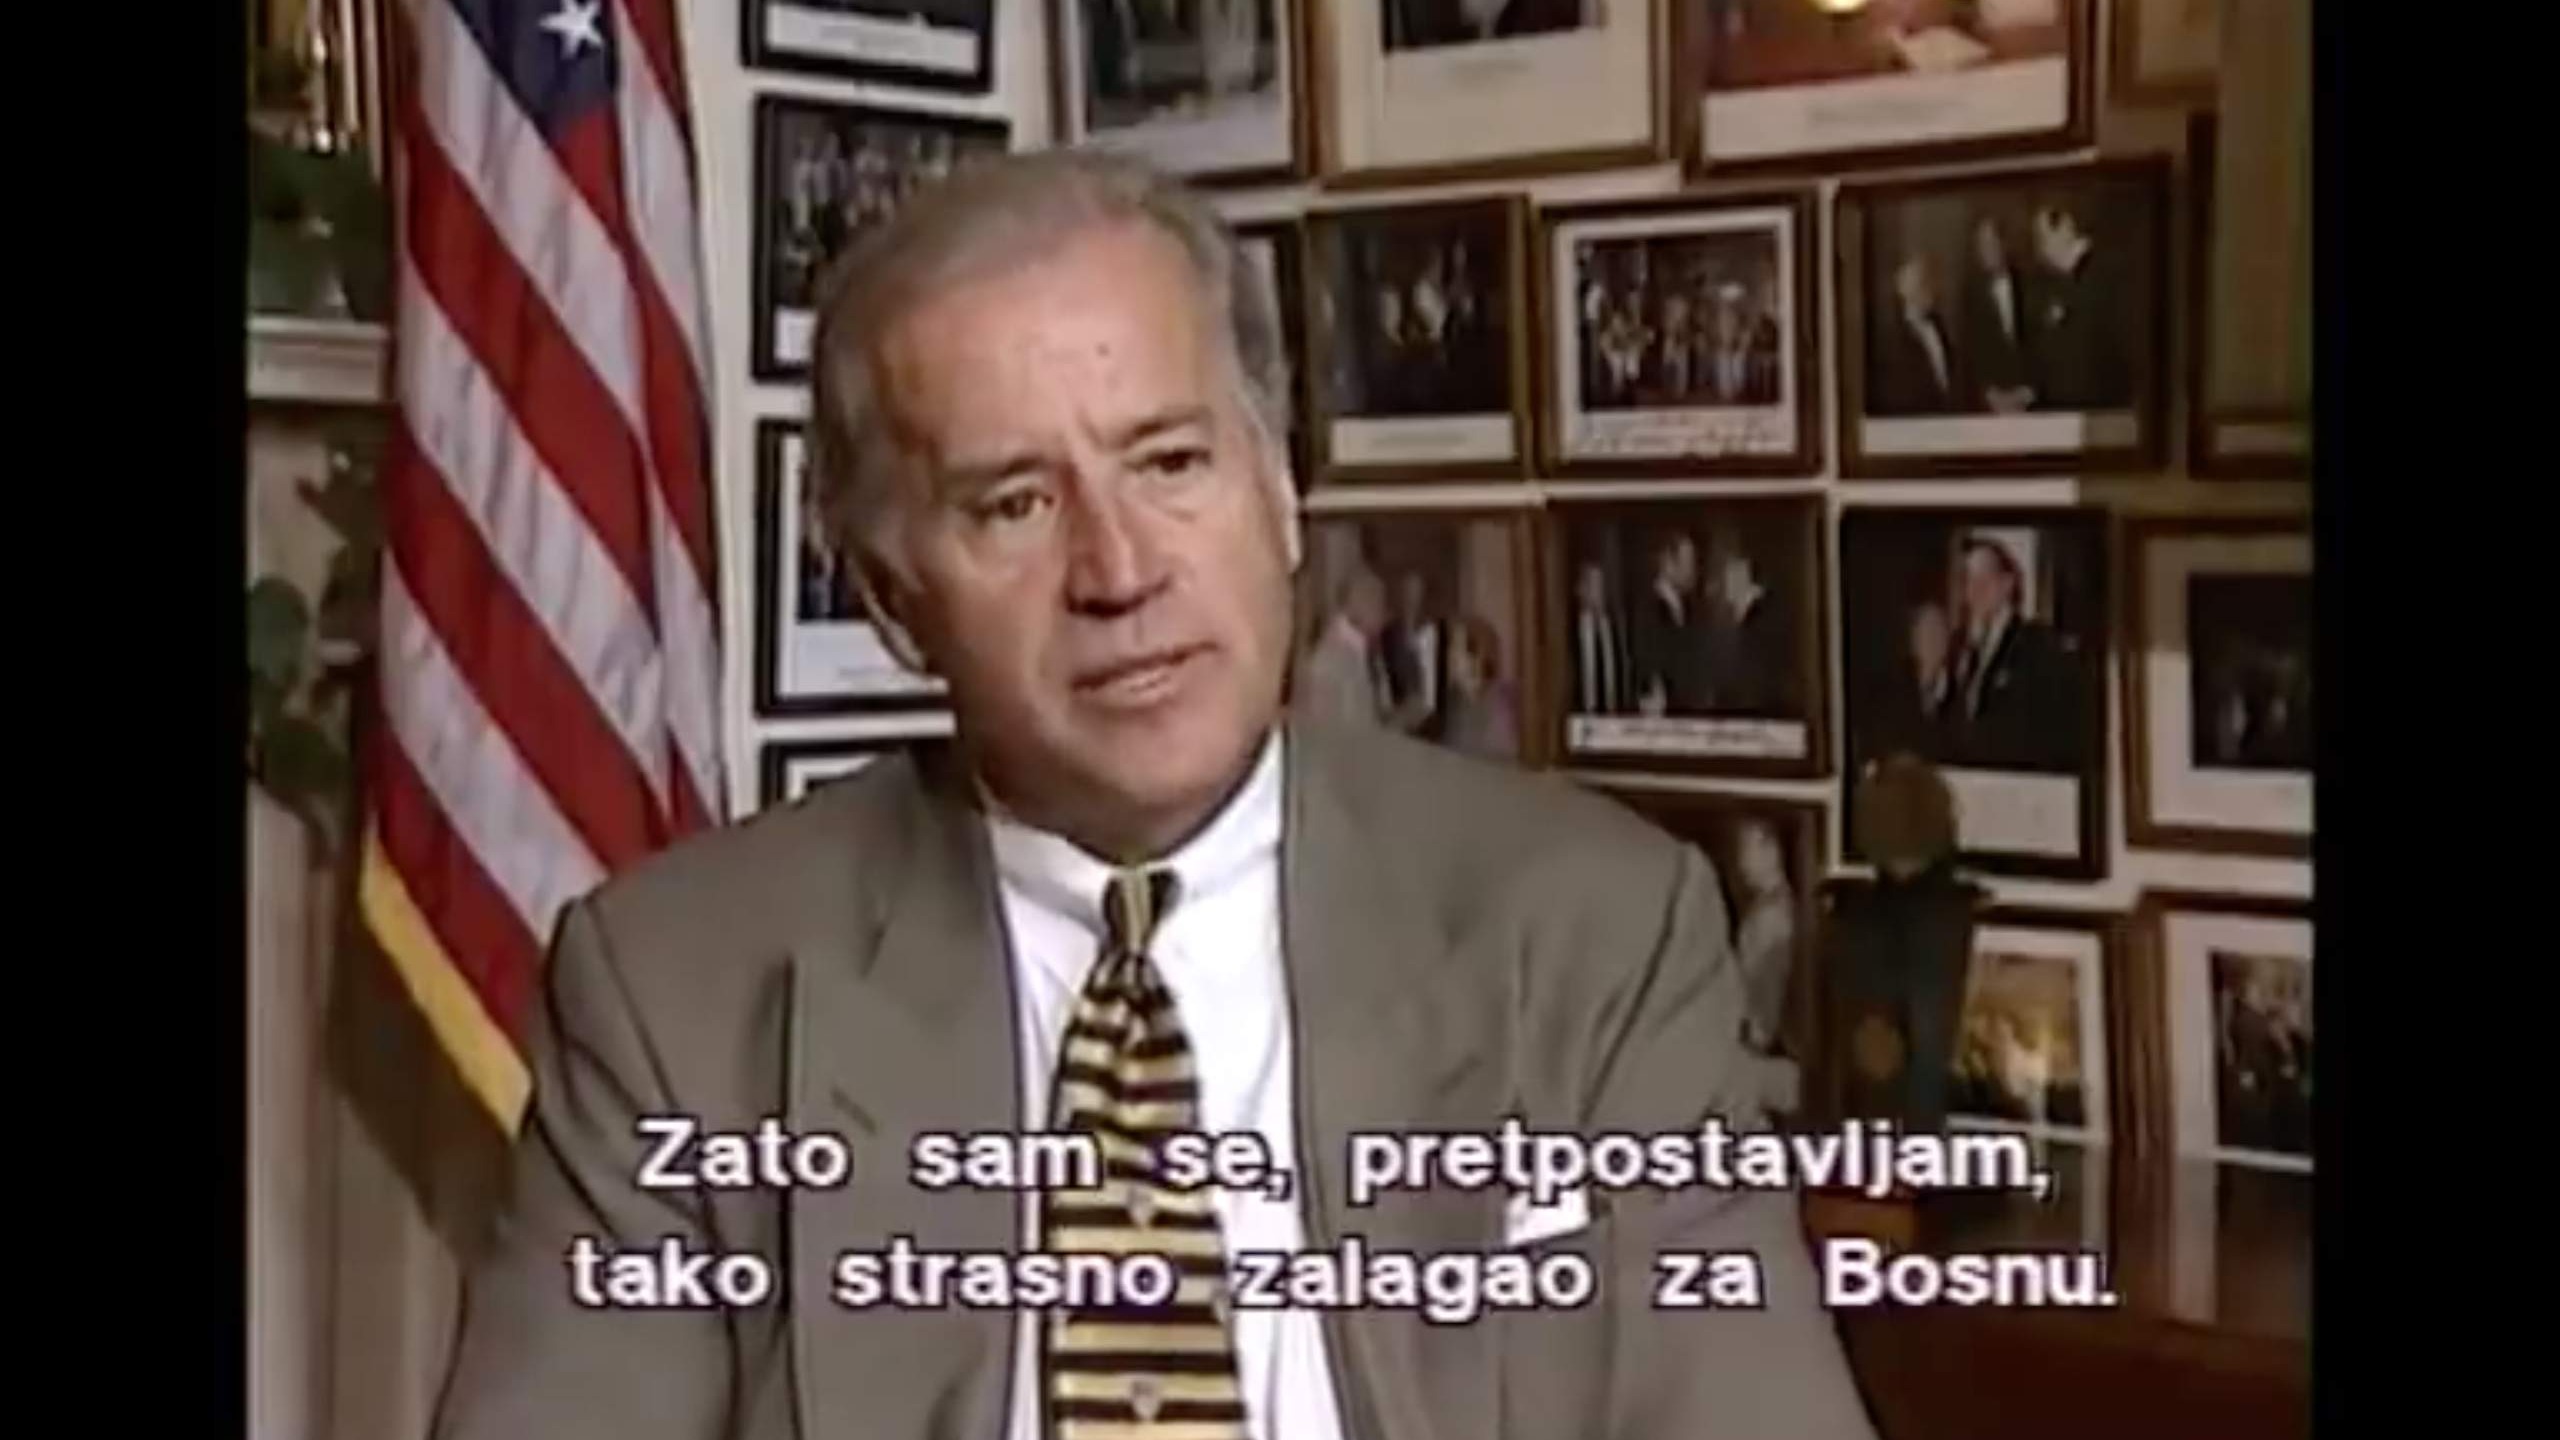 Intervju - Joseph Biden 1999: Neljudskost može puštati korijen samo kada dobri ljudi šute